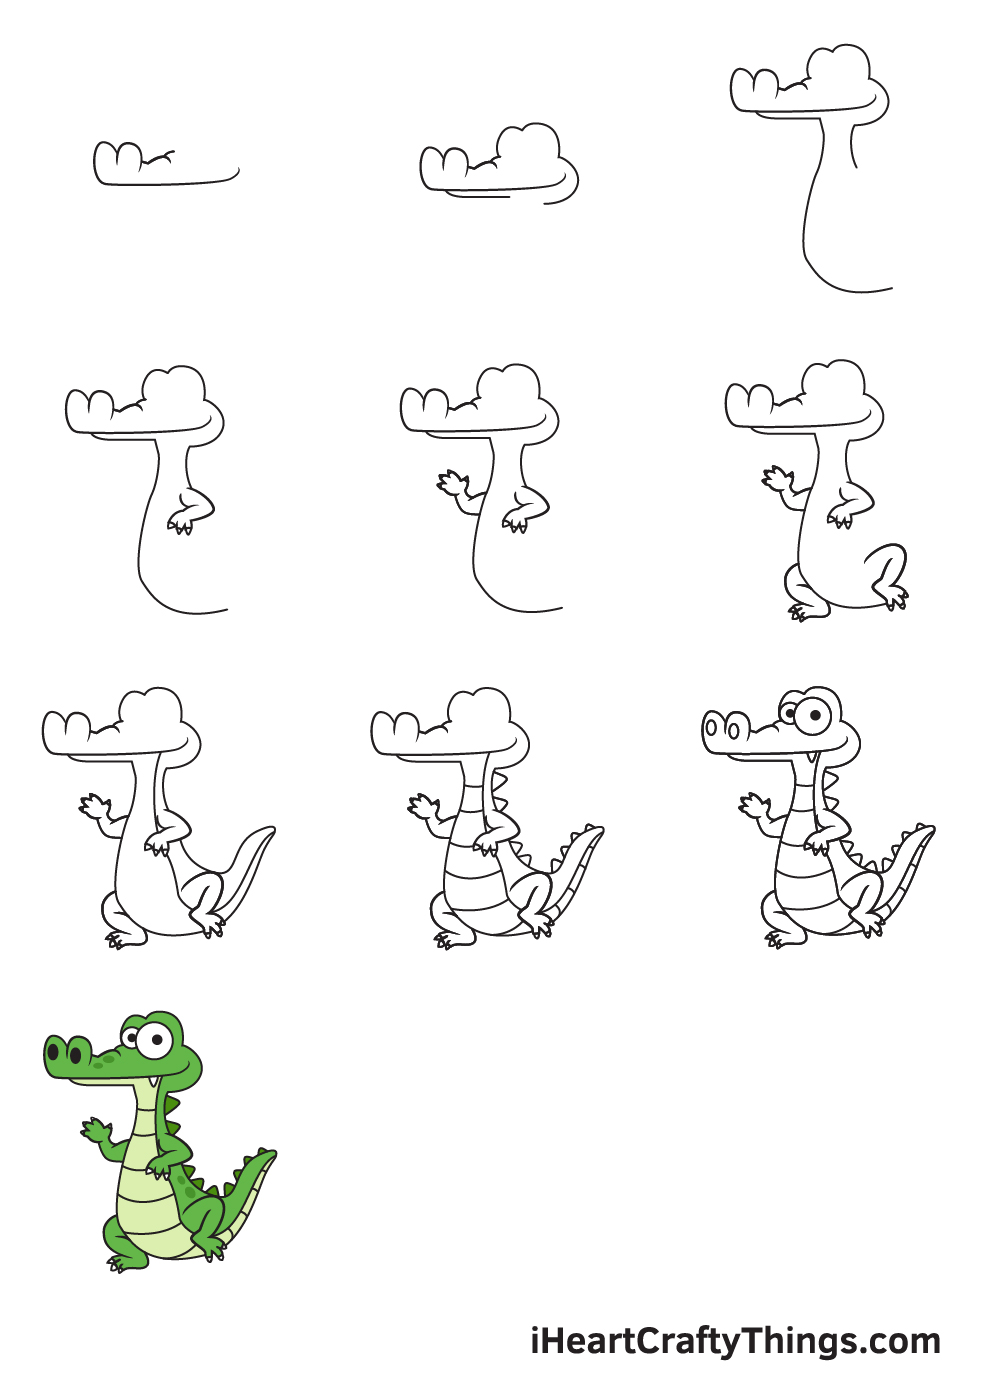 Vẽ cá sấu trong 9 bước dễ dàng